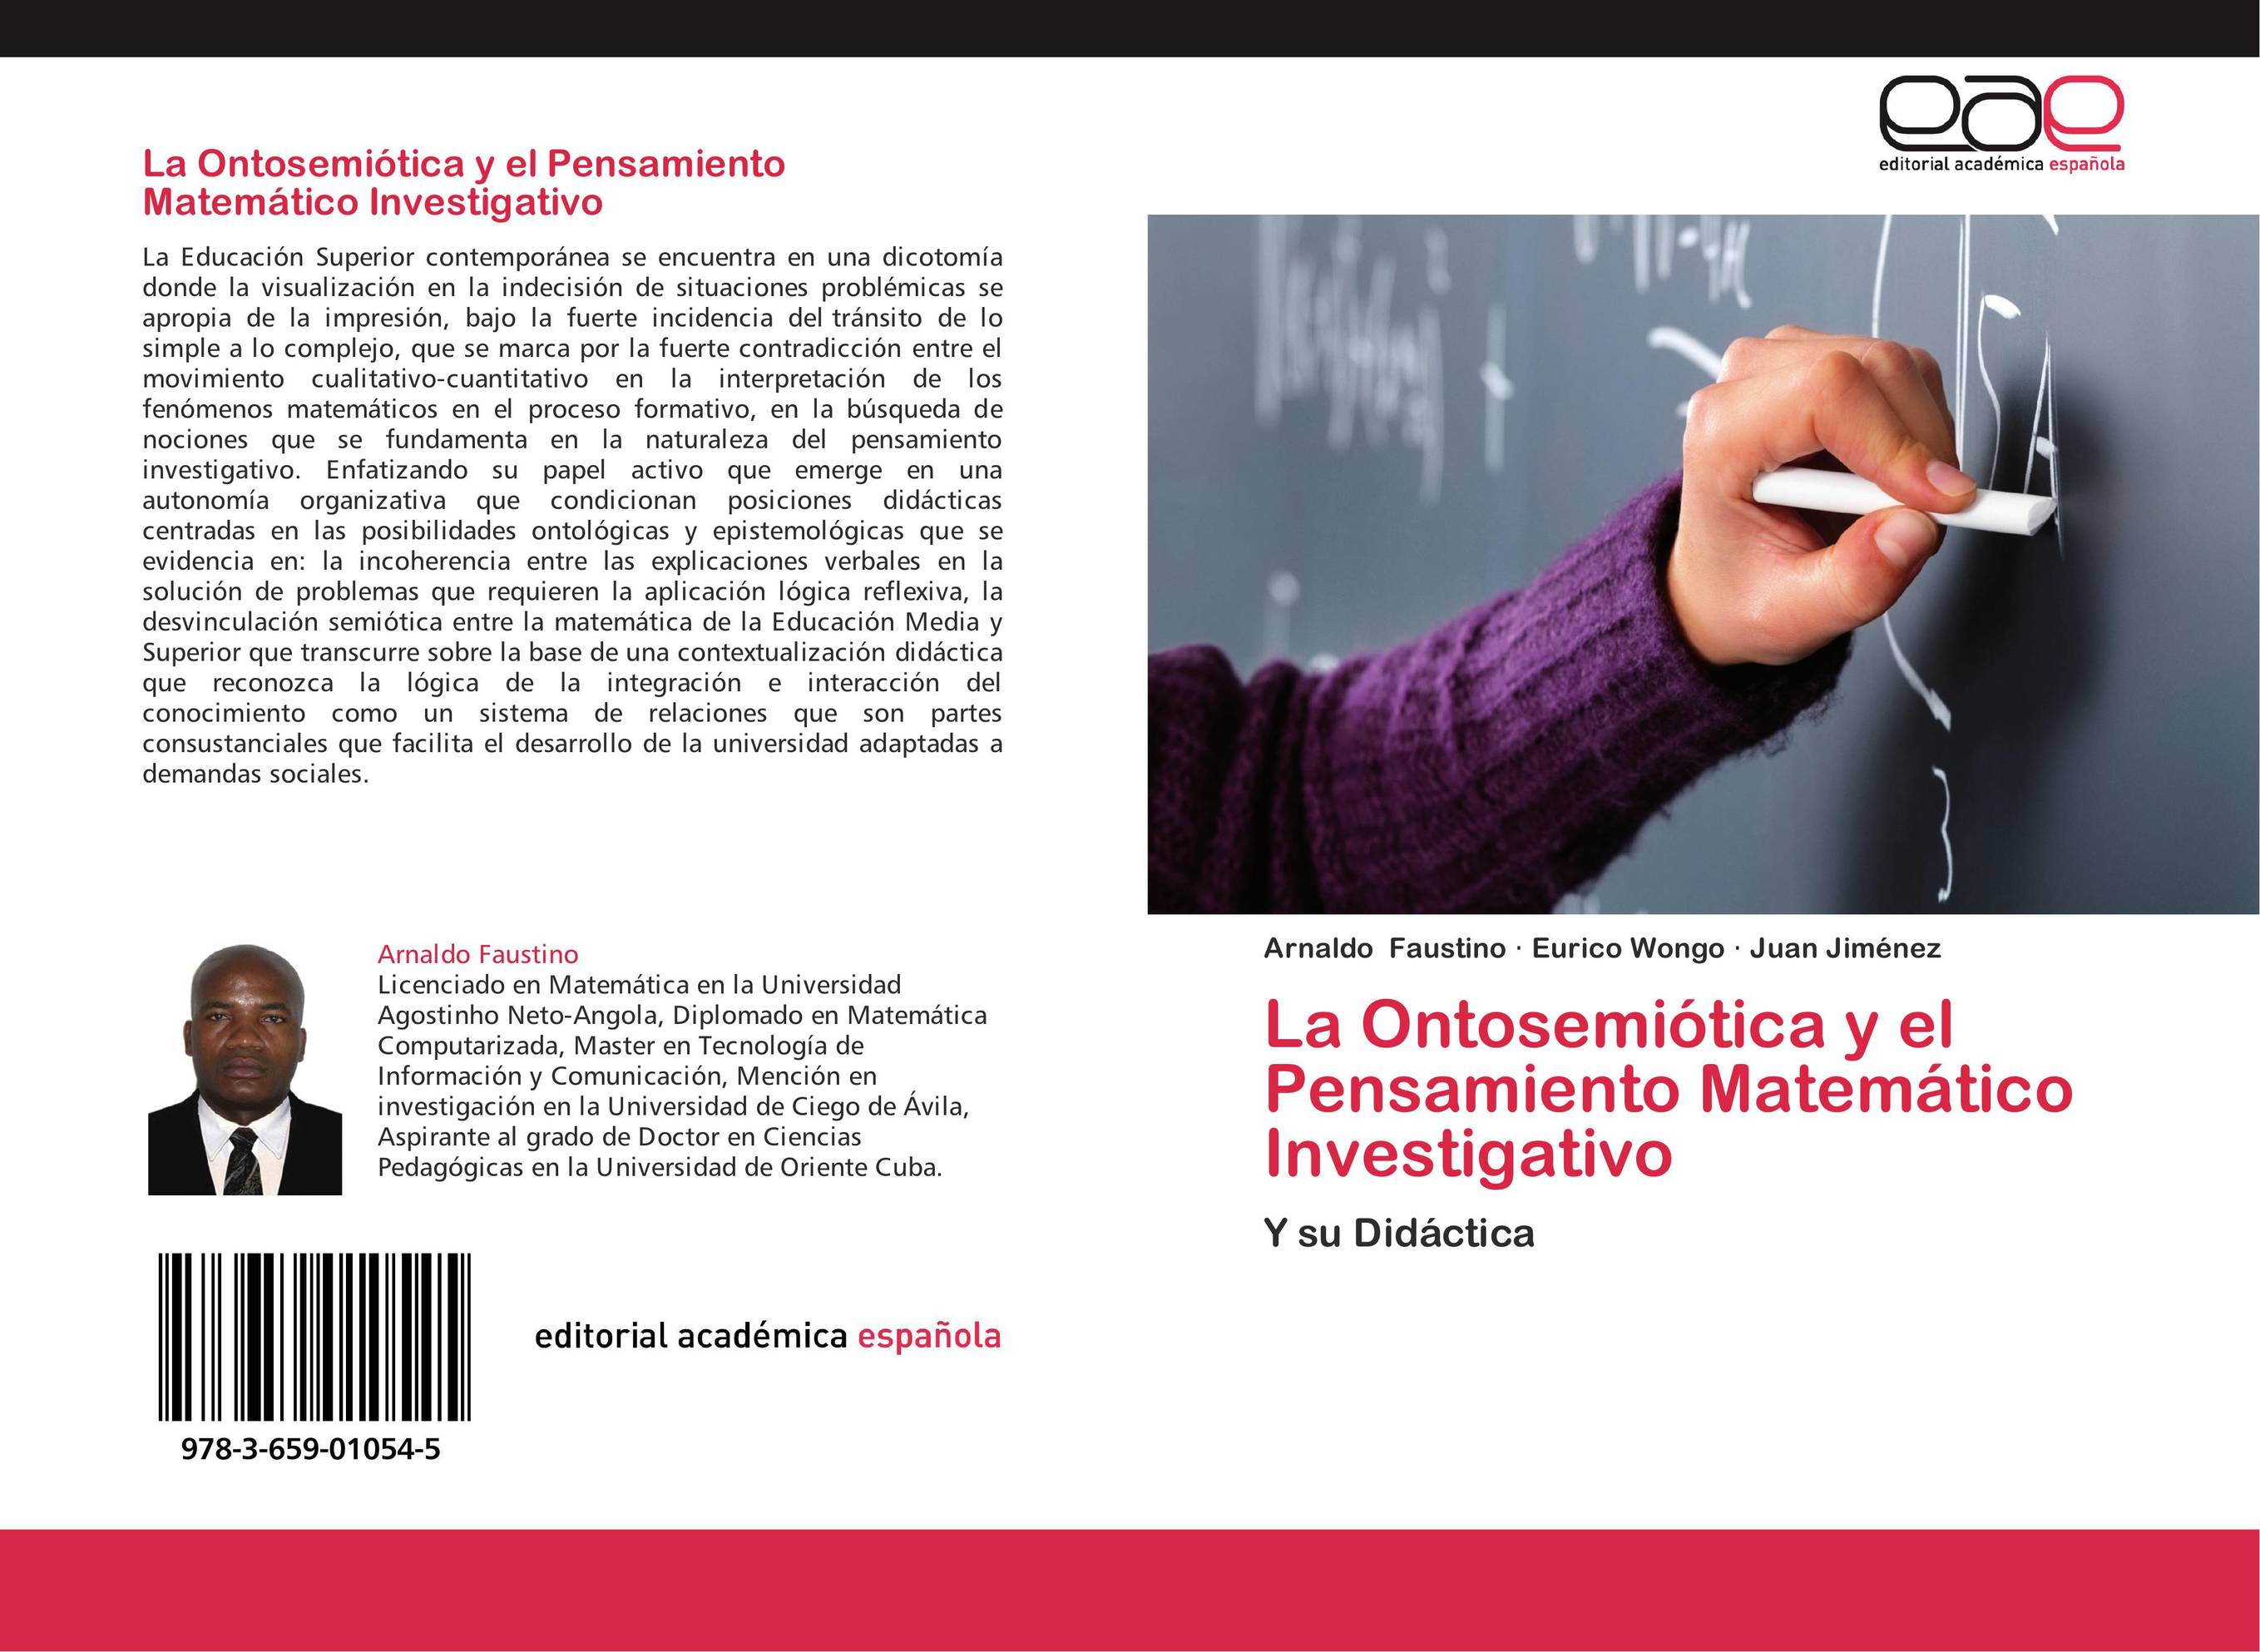 La Ontosemiótica y el Pensamiento Matemático Investigativo